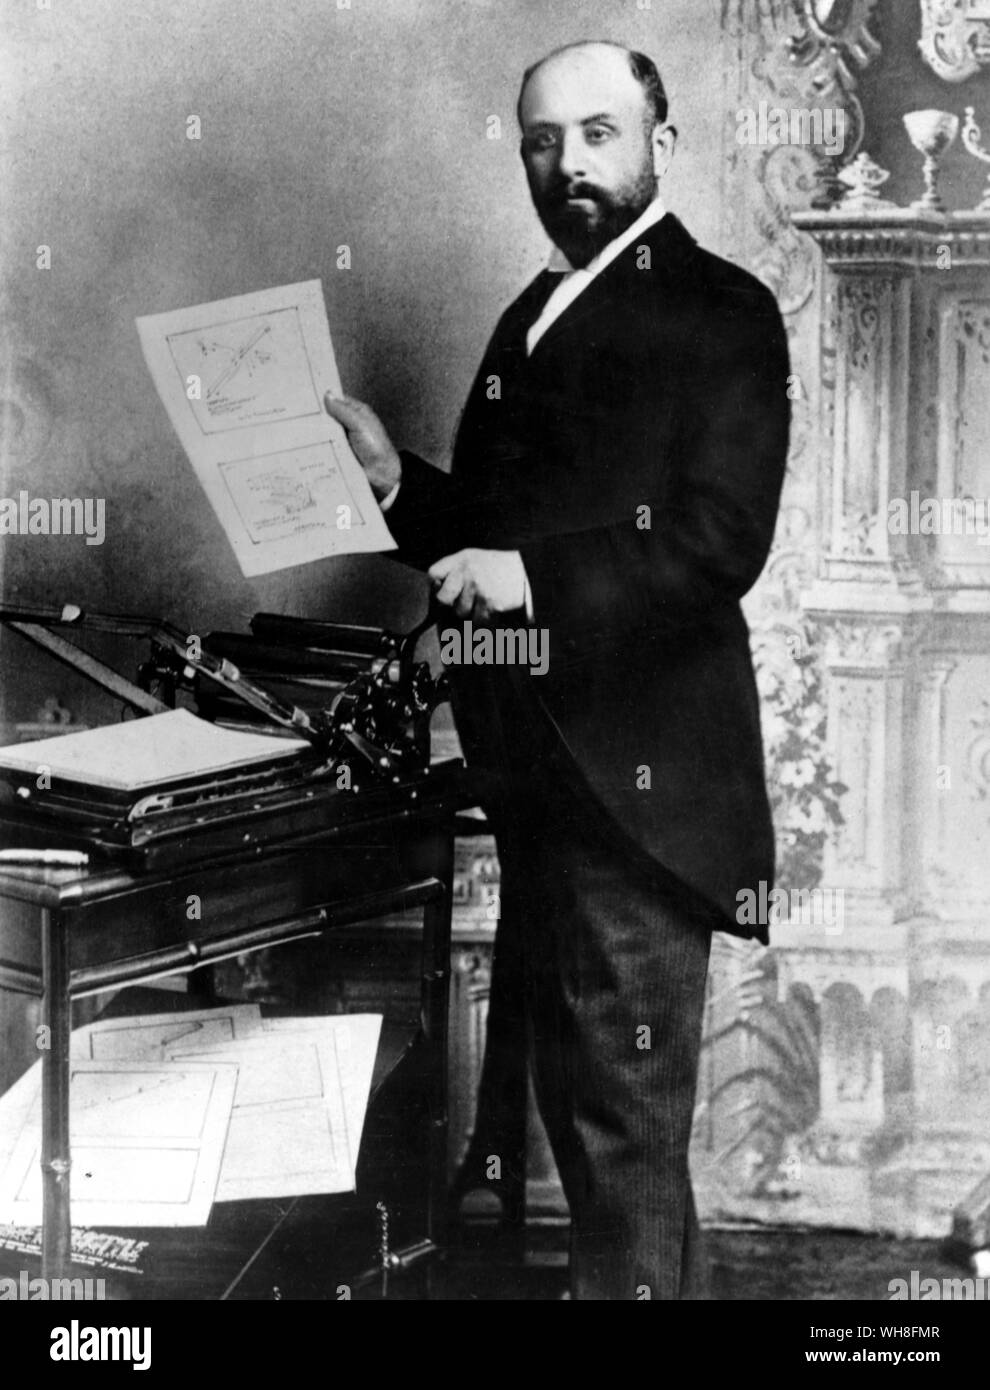 David Gestetner (1854-1939), fondateur de la société Gestetner, démontrant la version automatique de son invention originale en 1893. Né en Autriche-Hongrie, Gestetner est l'inventeur du duplicateur stencil, la première pièce d'équipement de bureau d'affaires qui a permis de faire de nombreuses copies de documents office, rapidement et à peu de frais. Banque D'Images